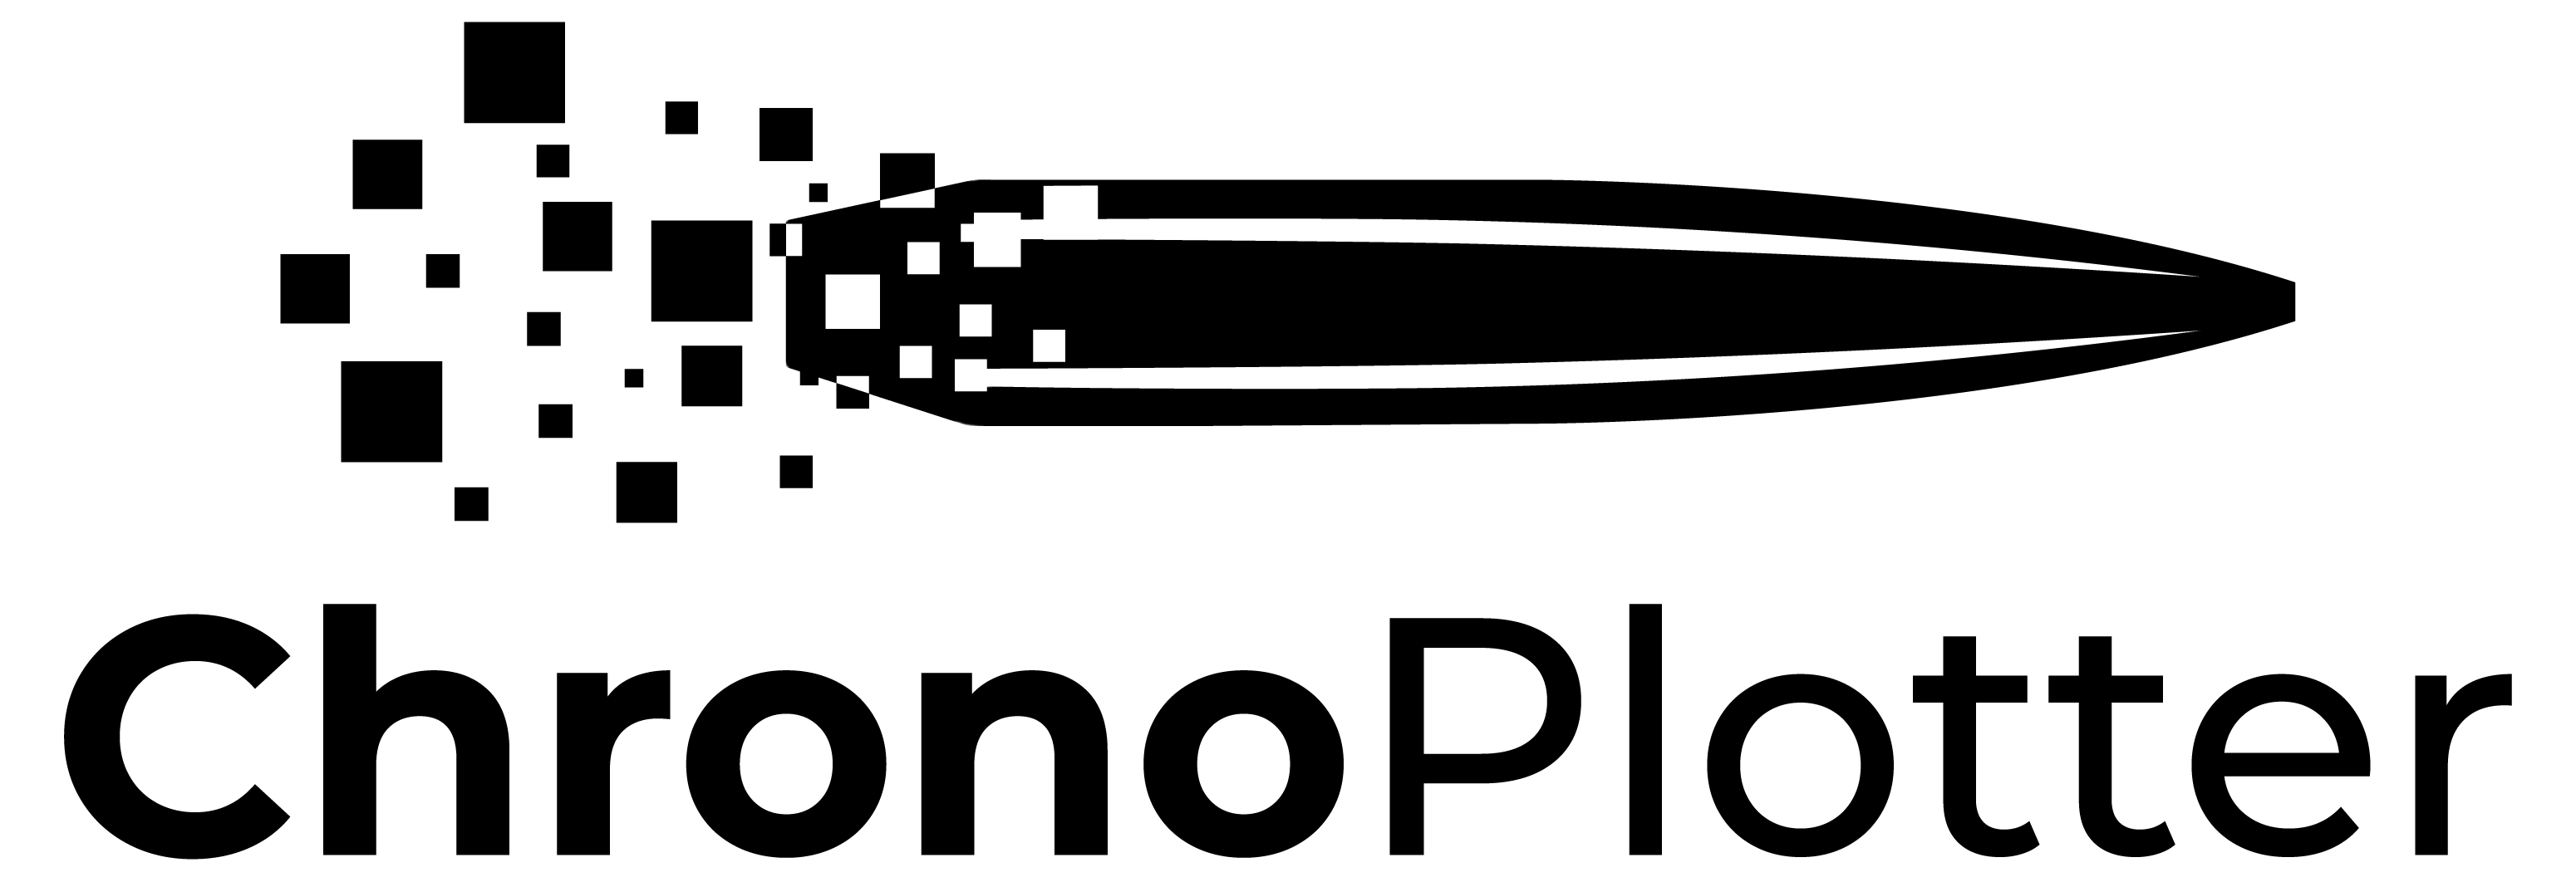 ChronoPlotter logo